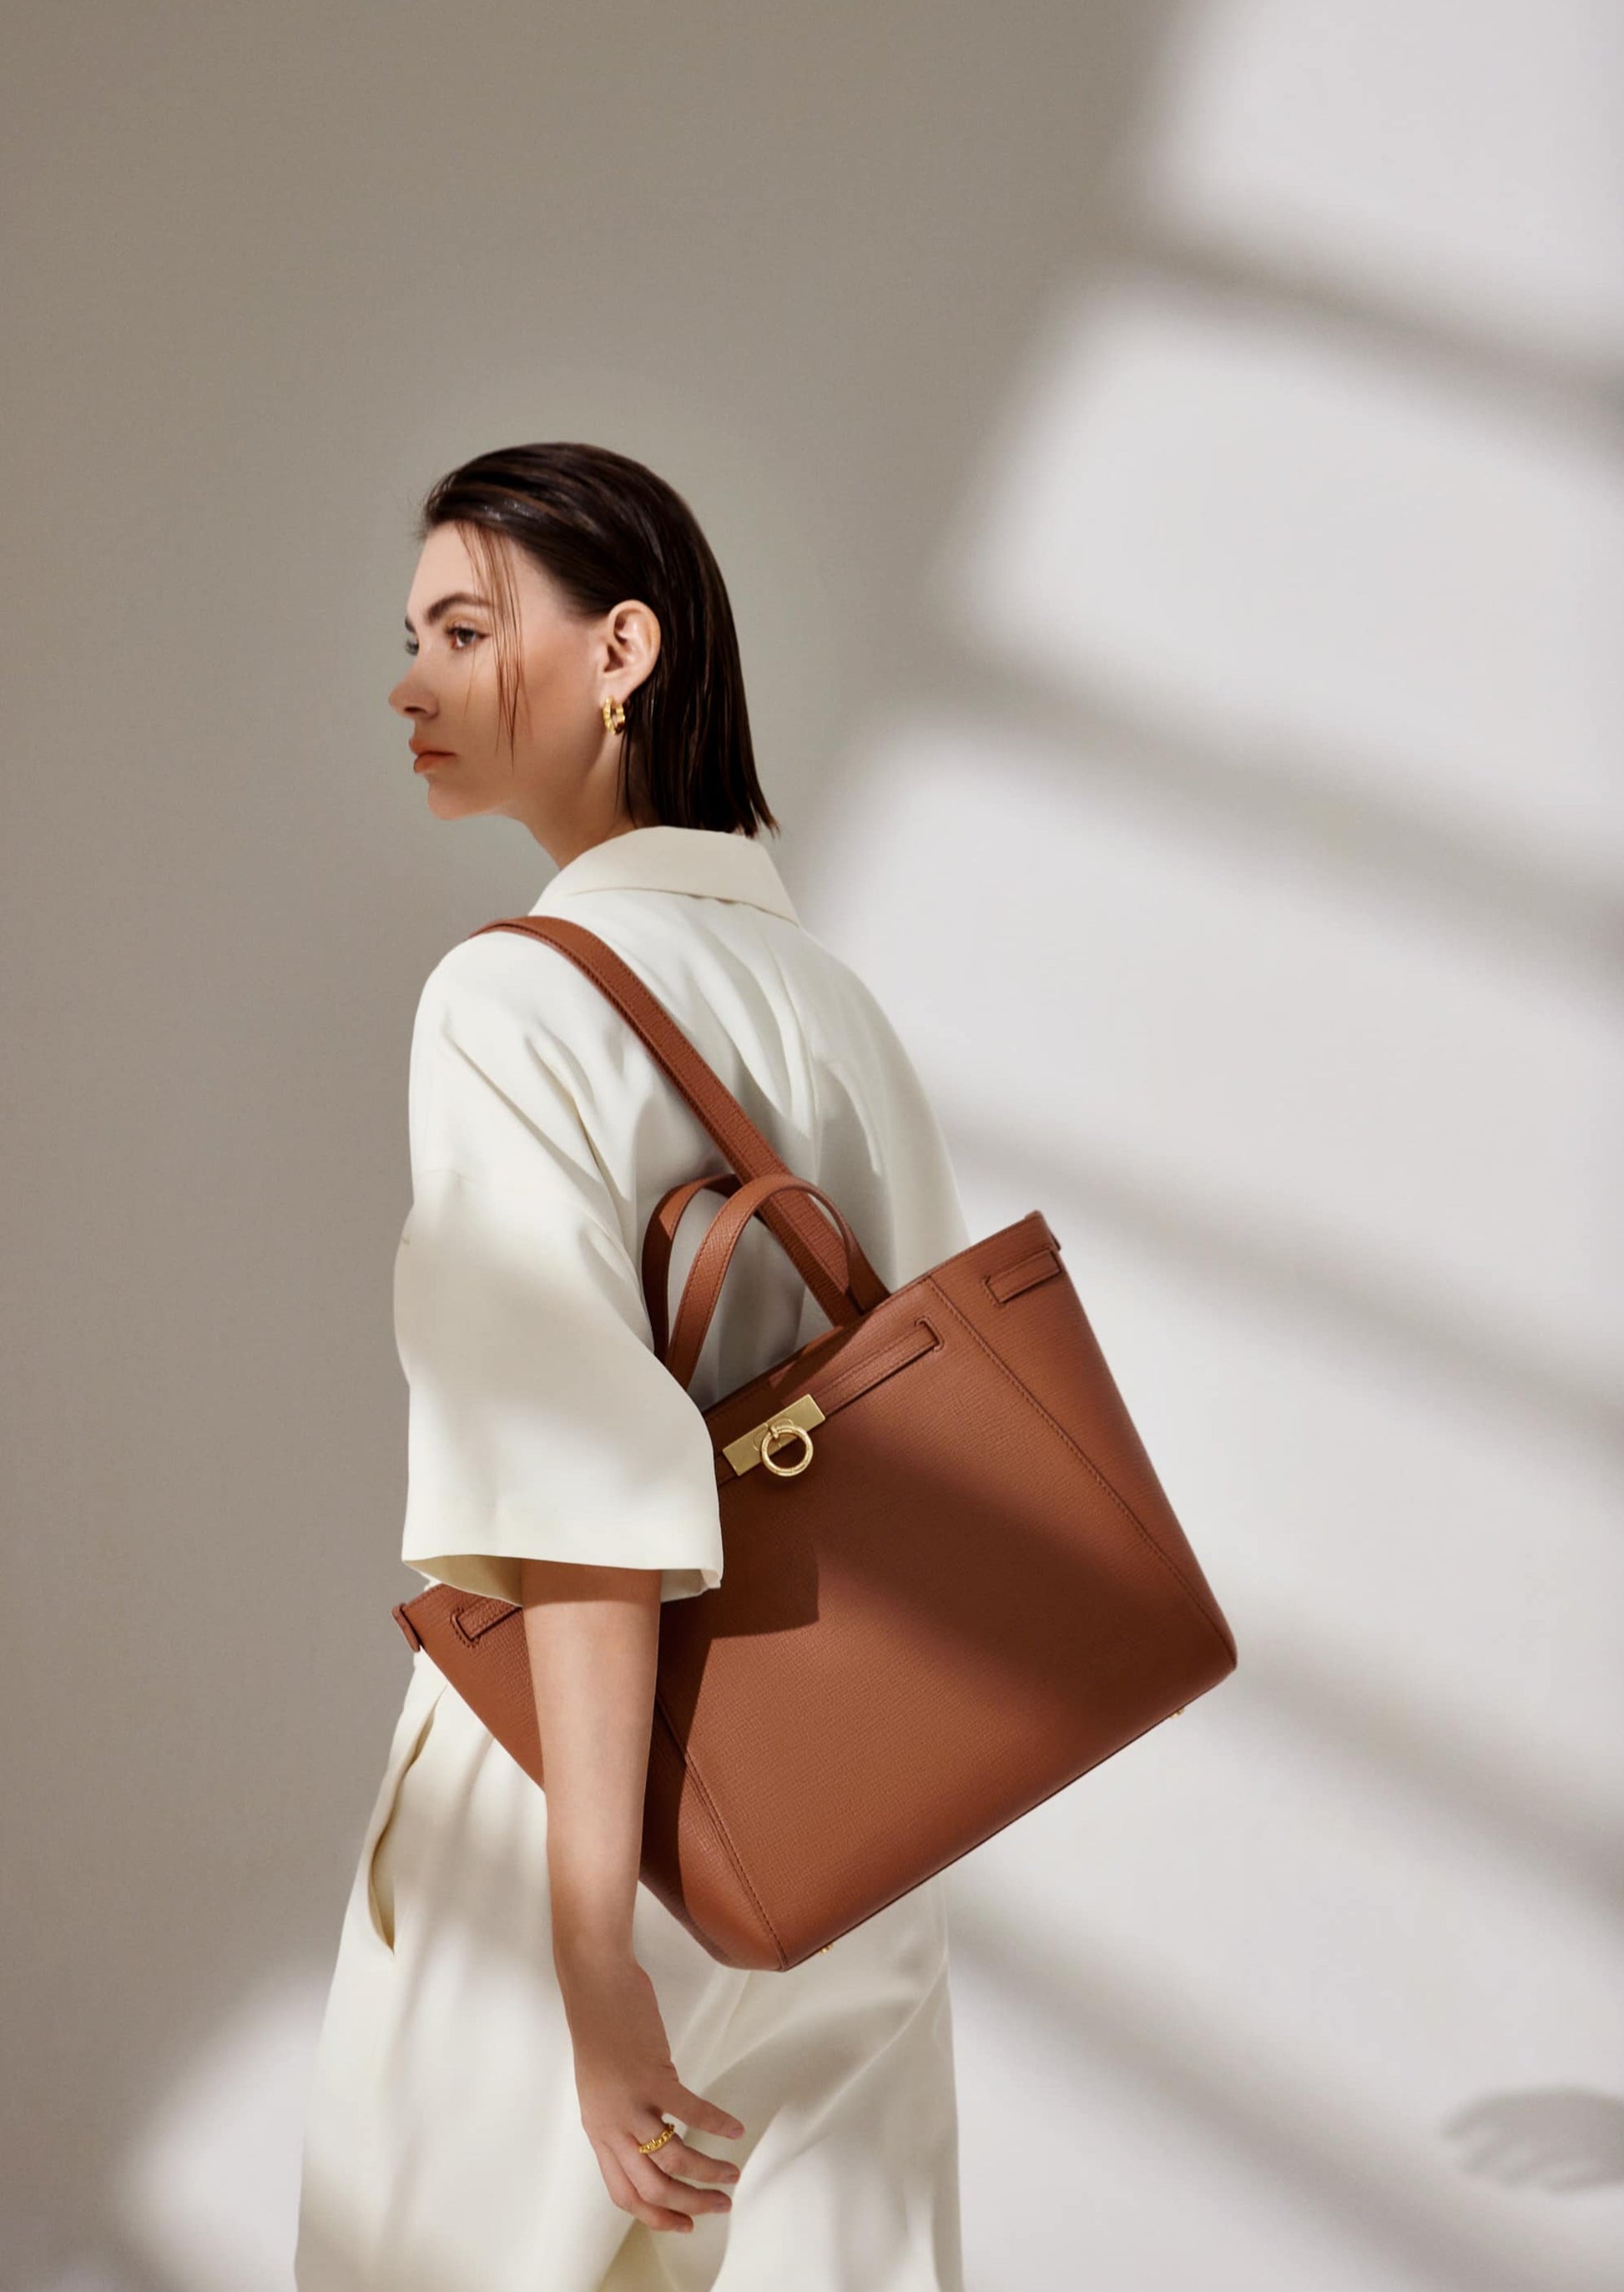 PARISA WANG®  Madison Medium Top Handle Bag – Parisa New York